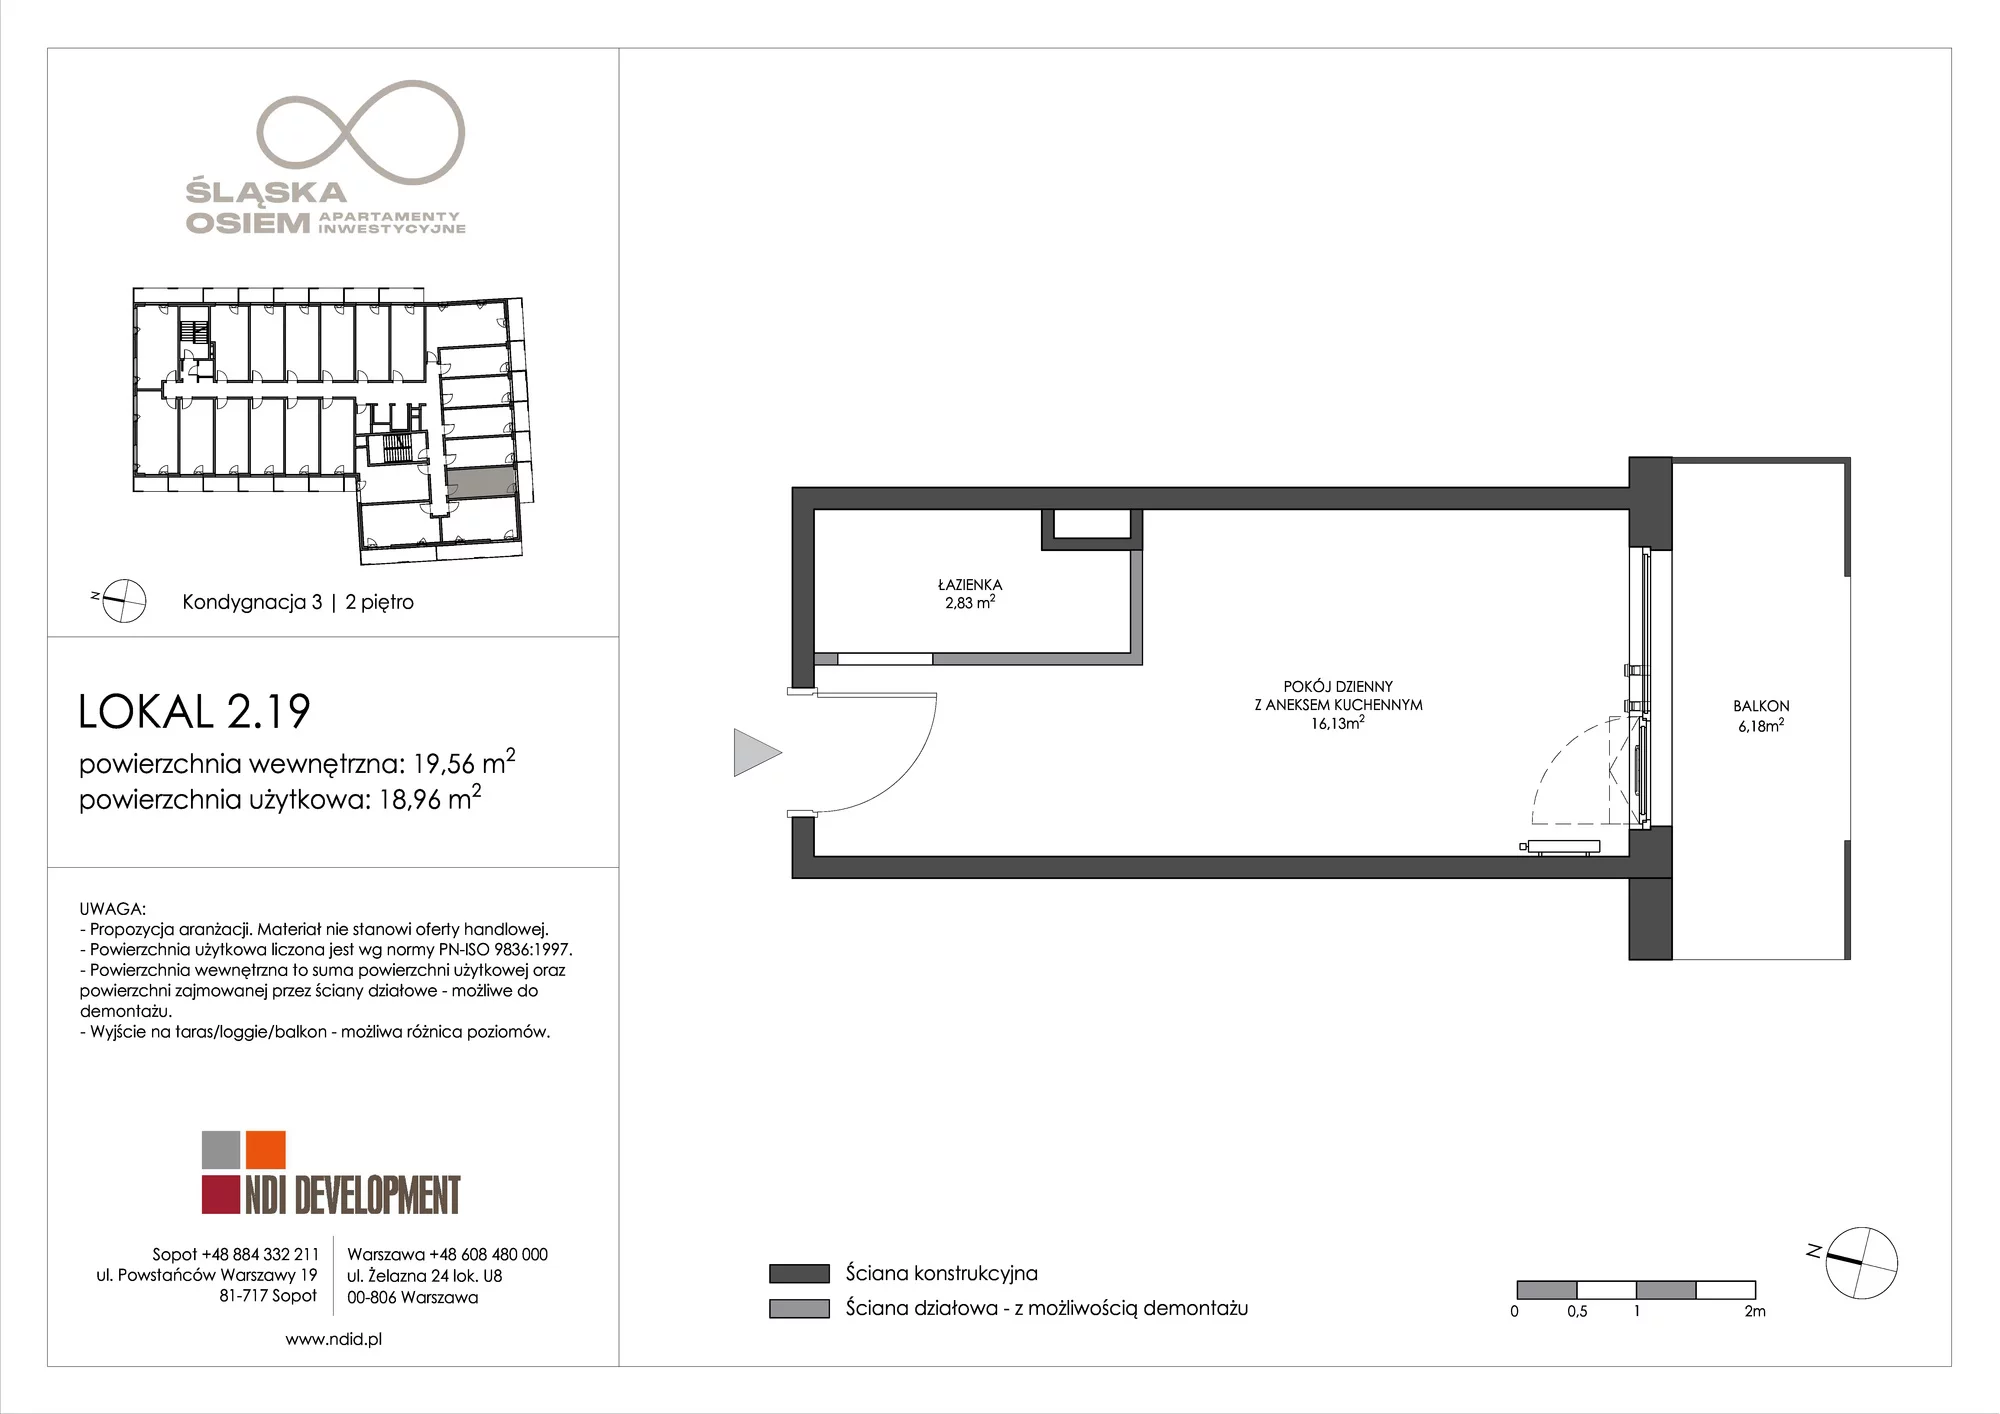 Apartament inwestycyjny 19,56 m², piętro 2, oferta nr 2.19, Śląska Osiem, Gdańsk, Przymorze, ul. Śląska 8